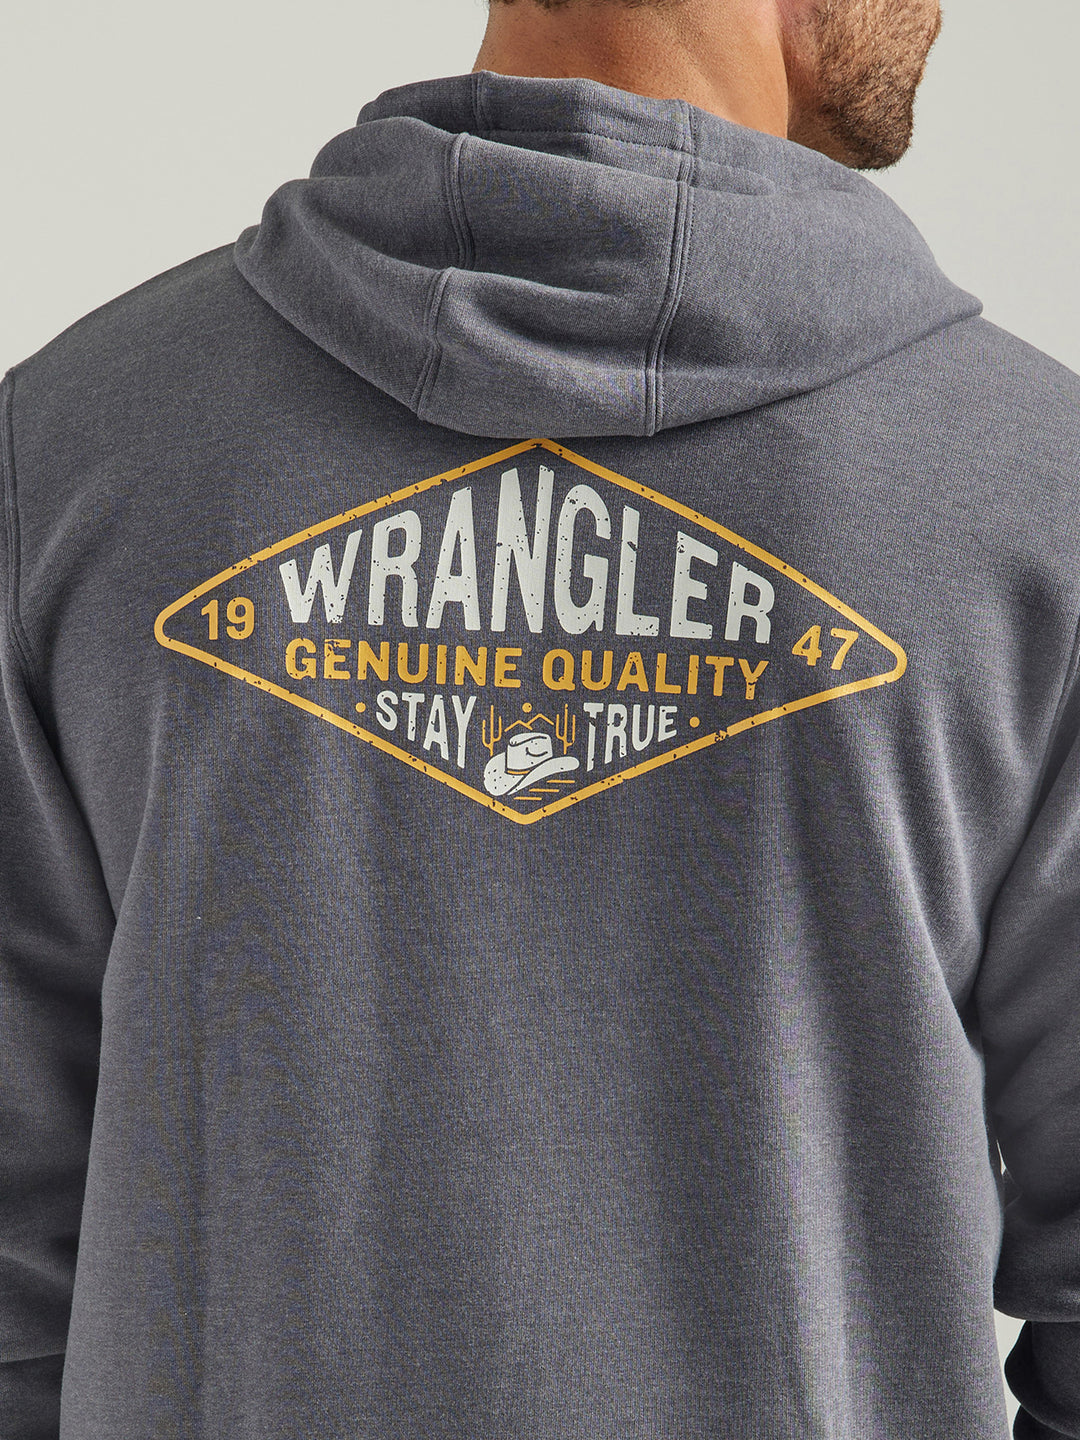 Wrangler Men's Charcoal Heather Graphic Logo Full Zip Hoodie